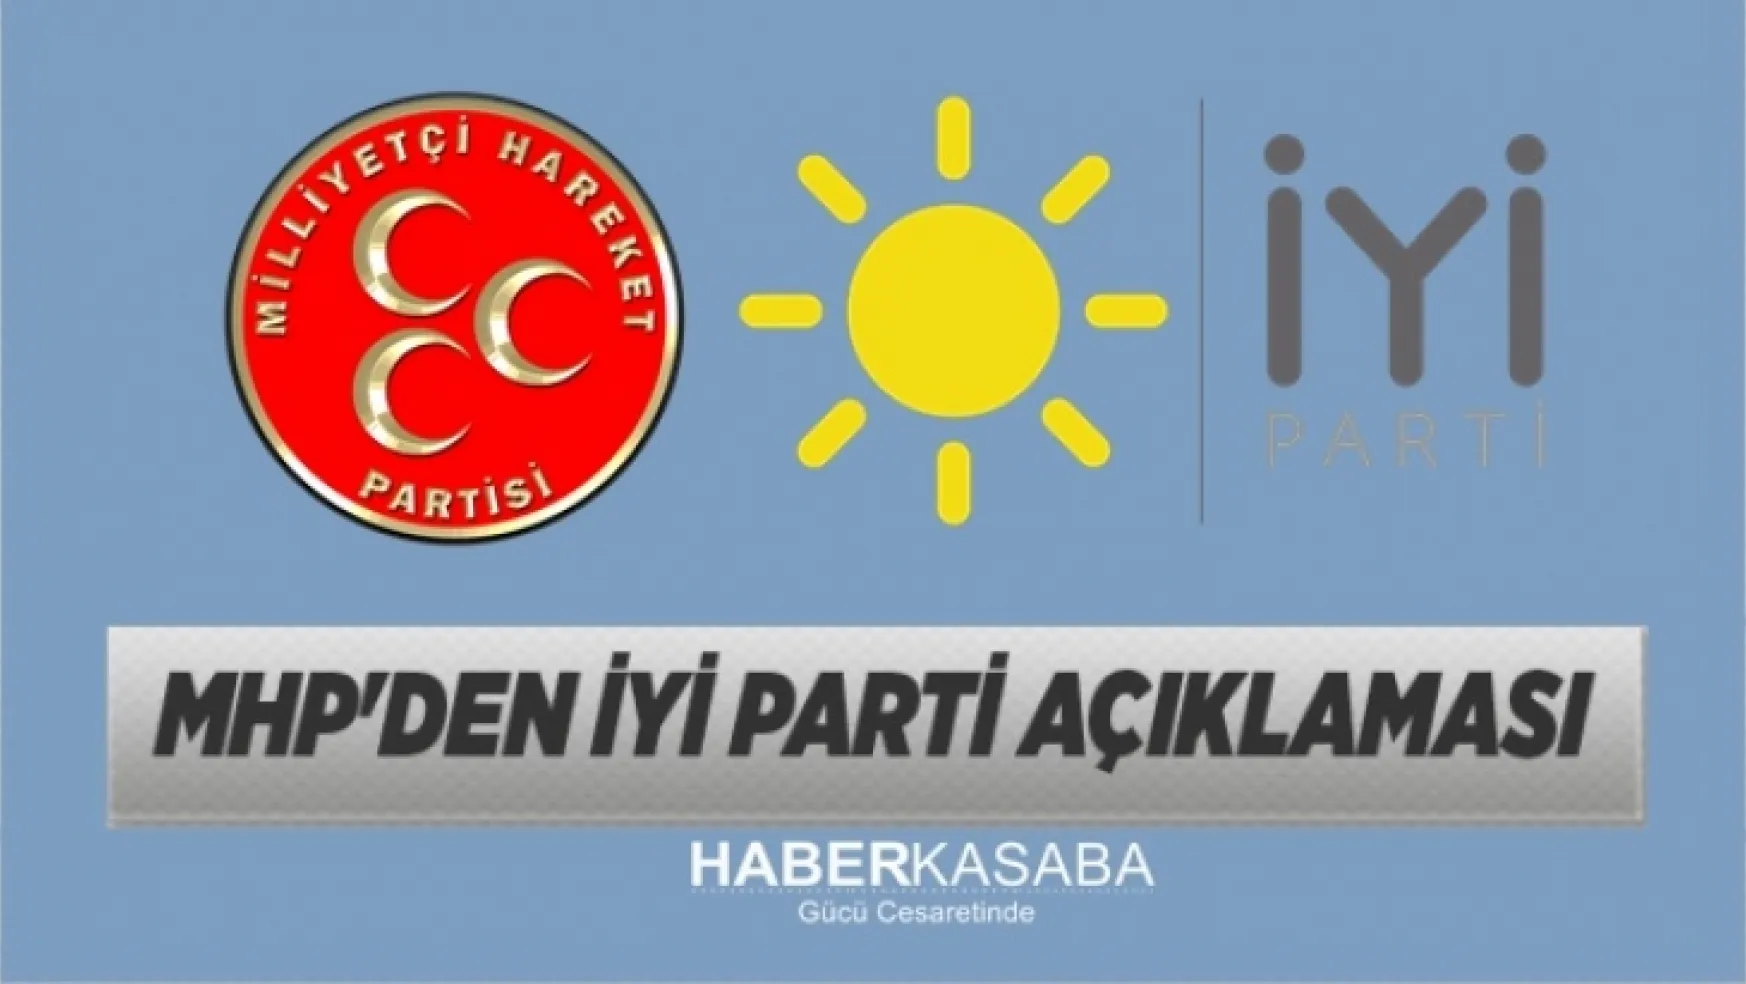 MHP'den İYİ Parti açıklaması geldi